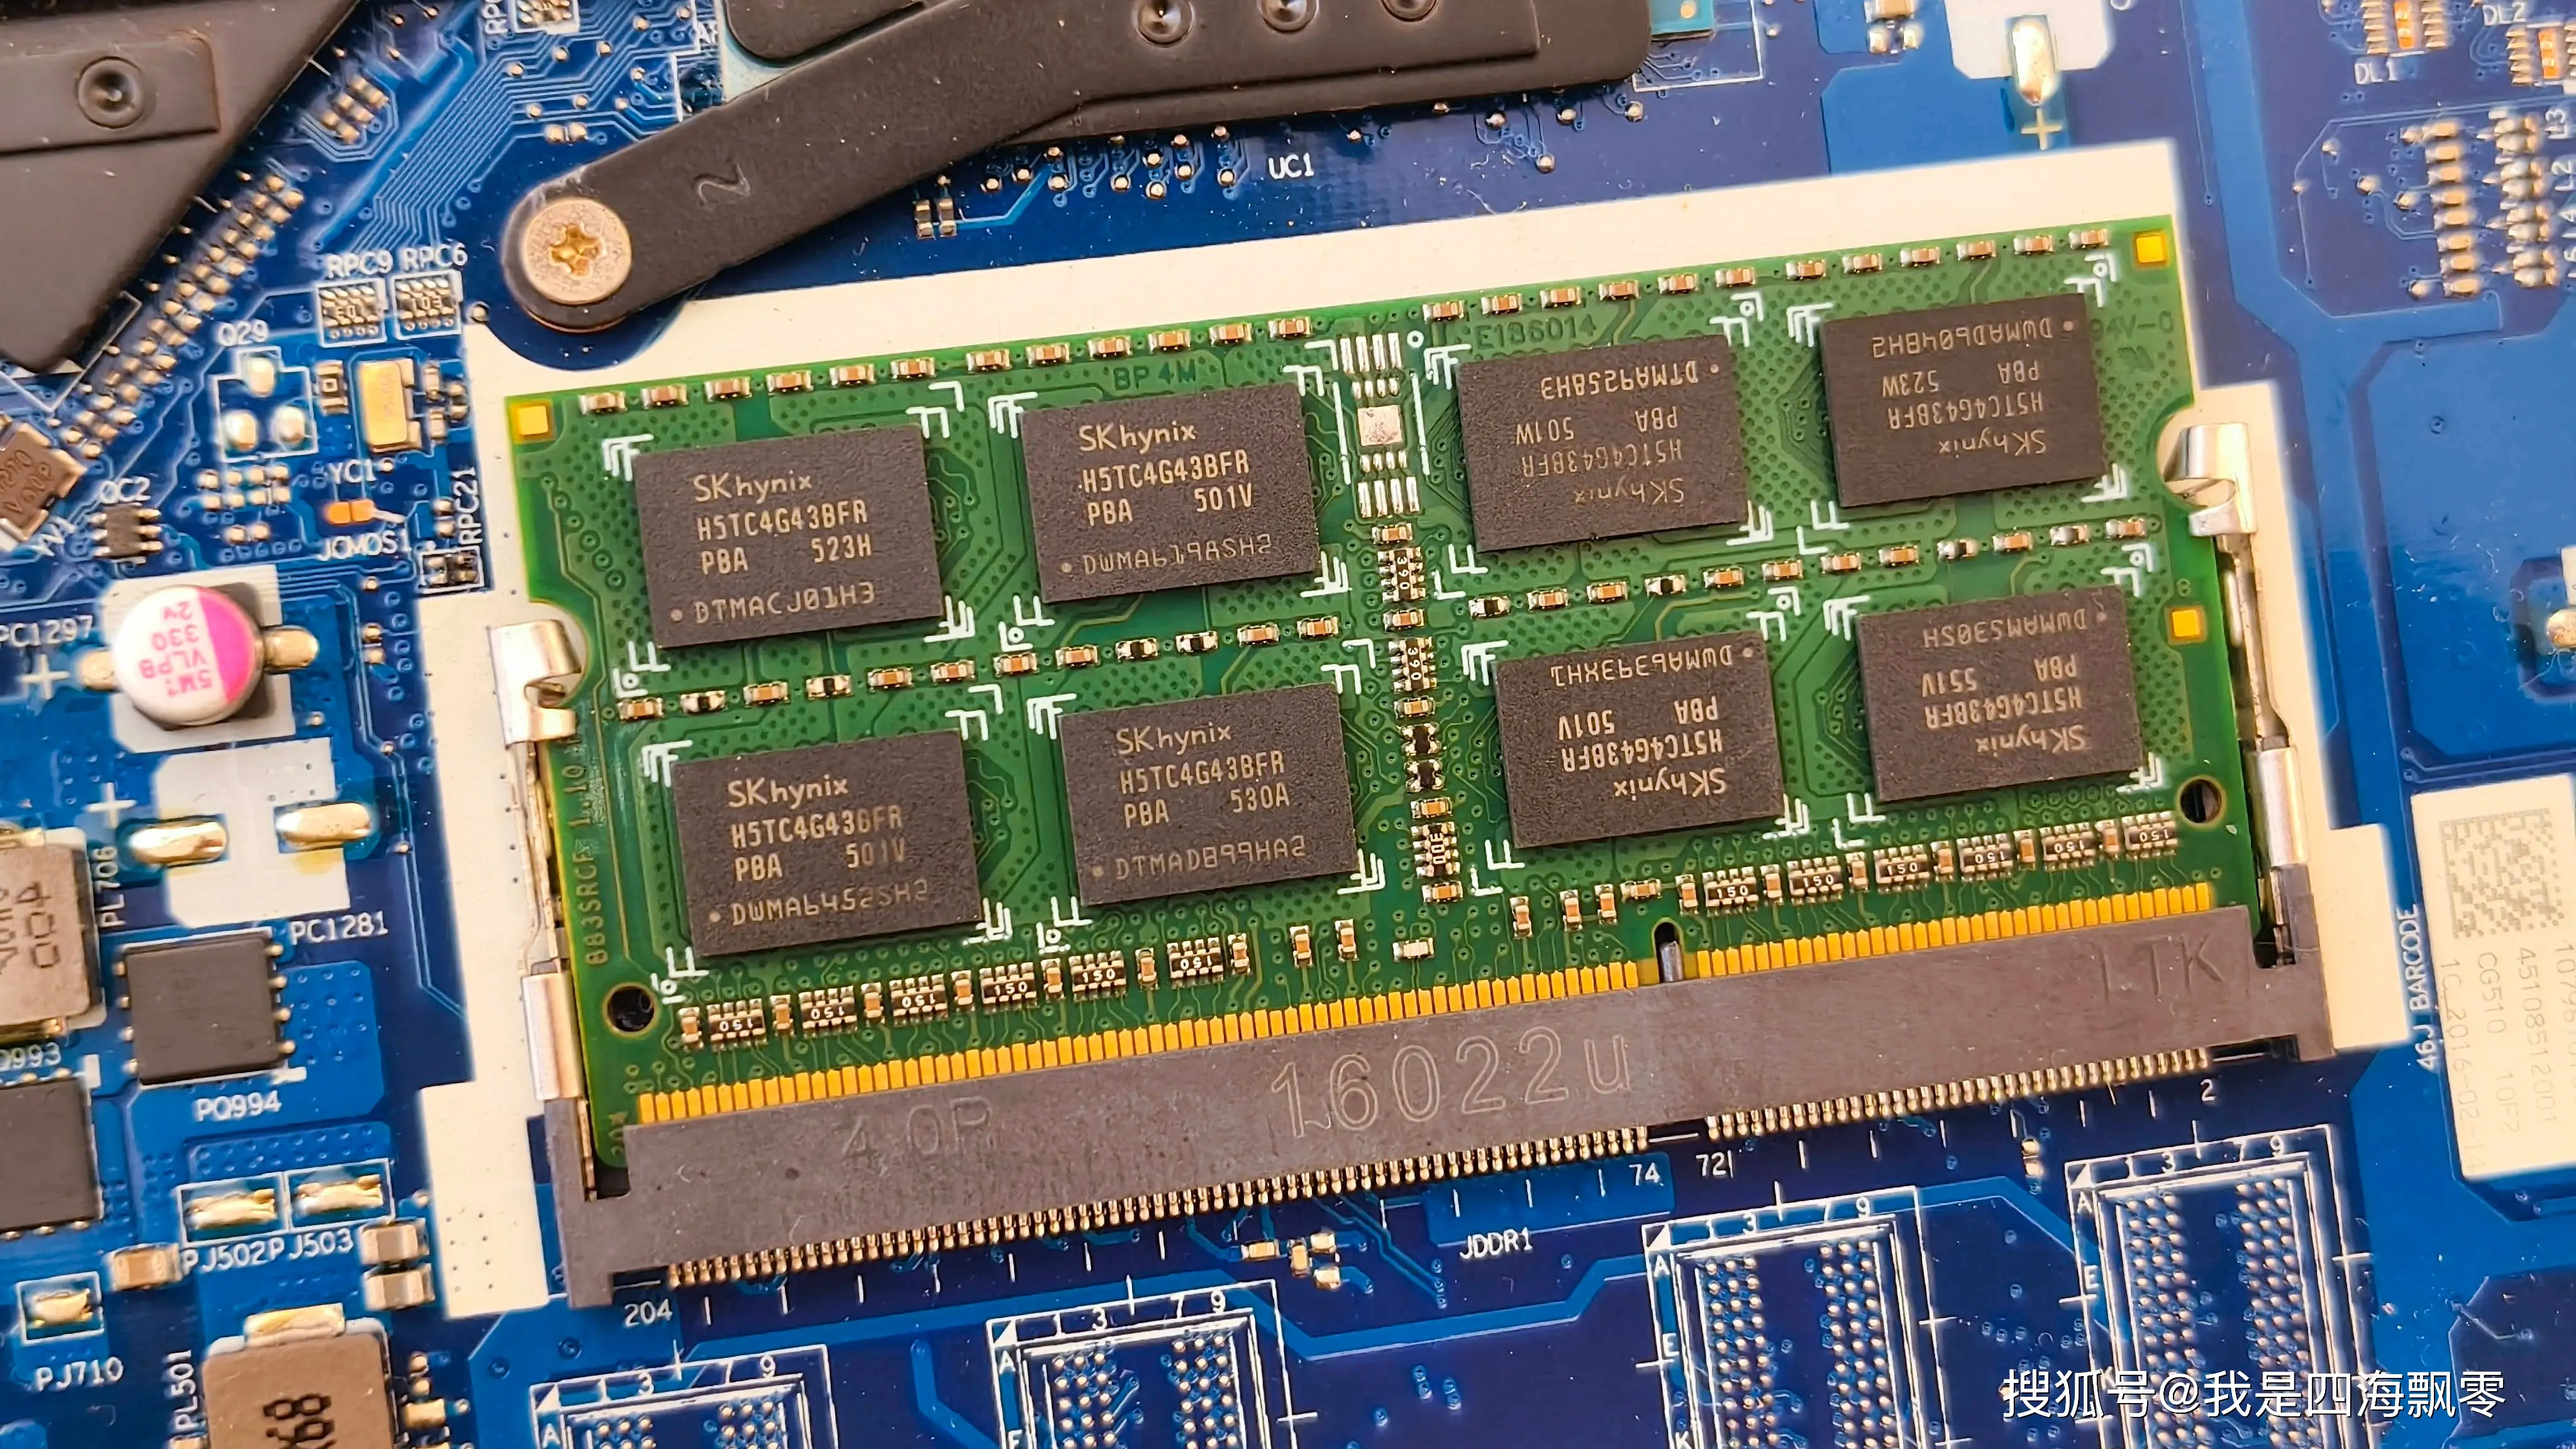 2019 年 DDR3 内存仍有价值，发烧友分享选型建议  第8张